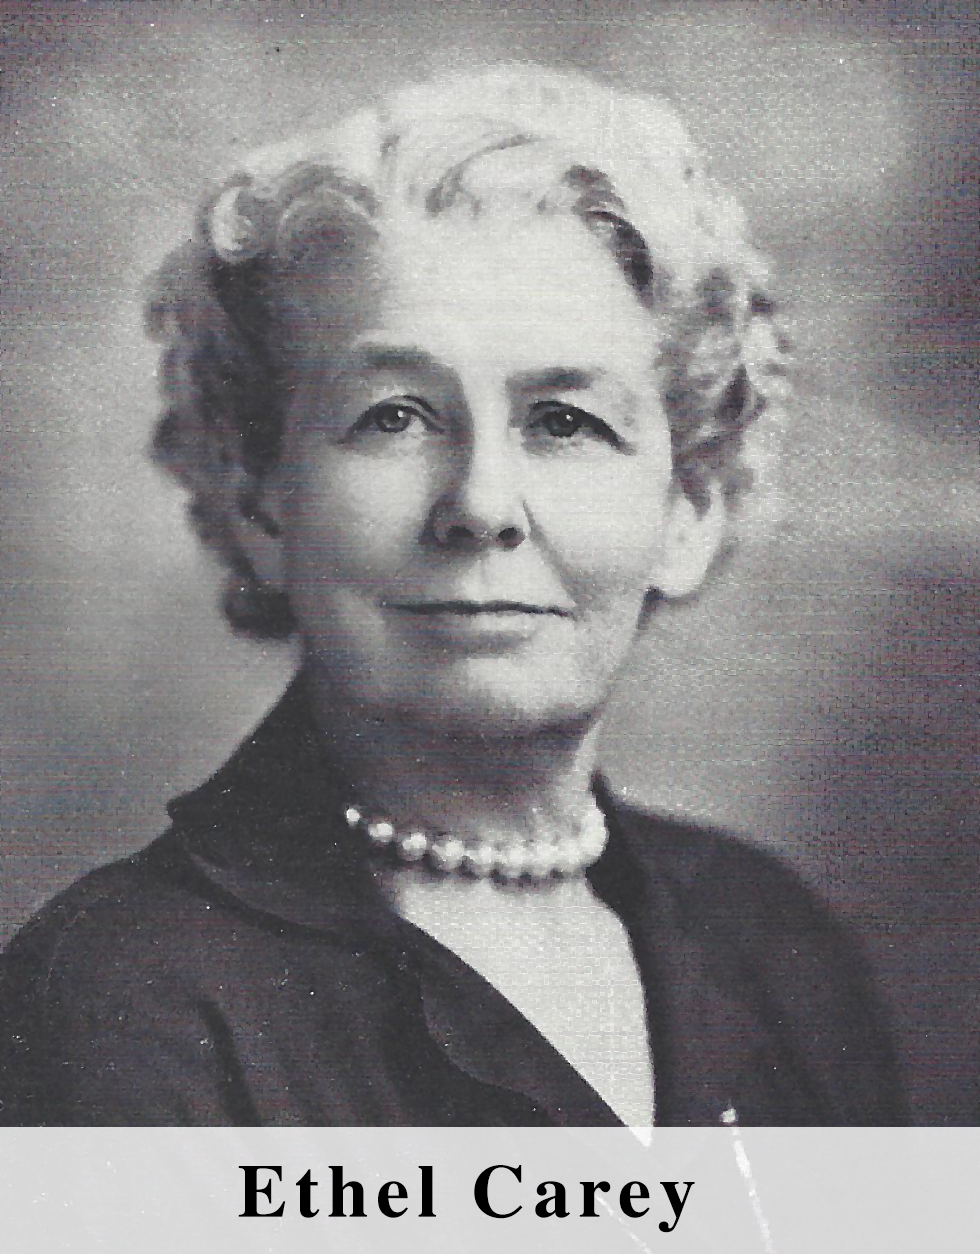 Ethel Carey in 1957